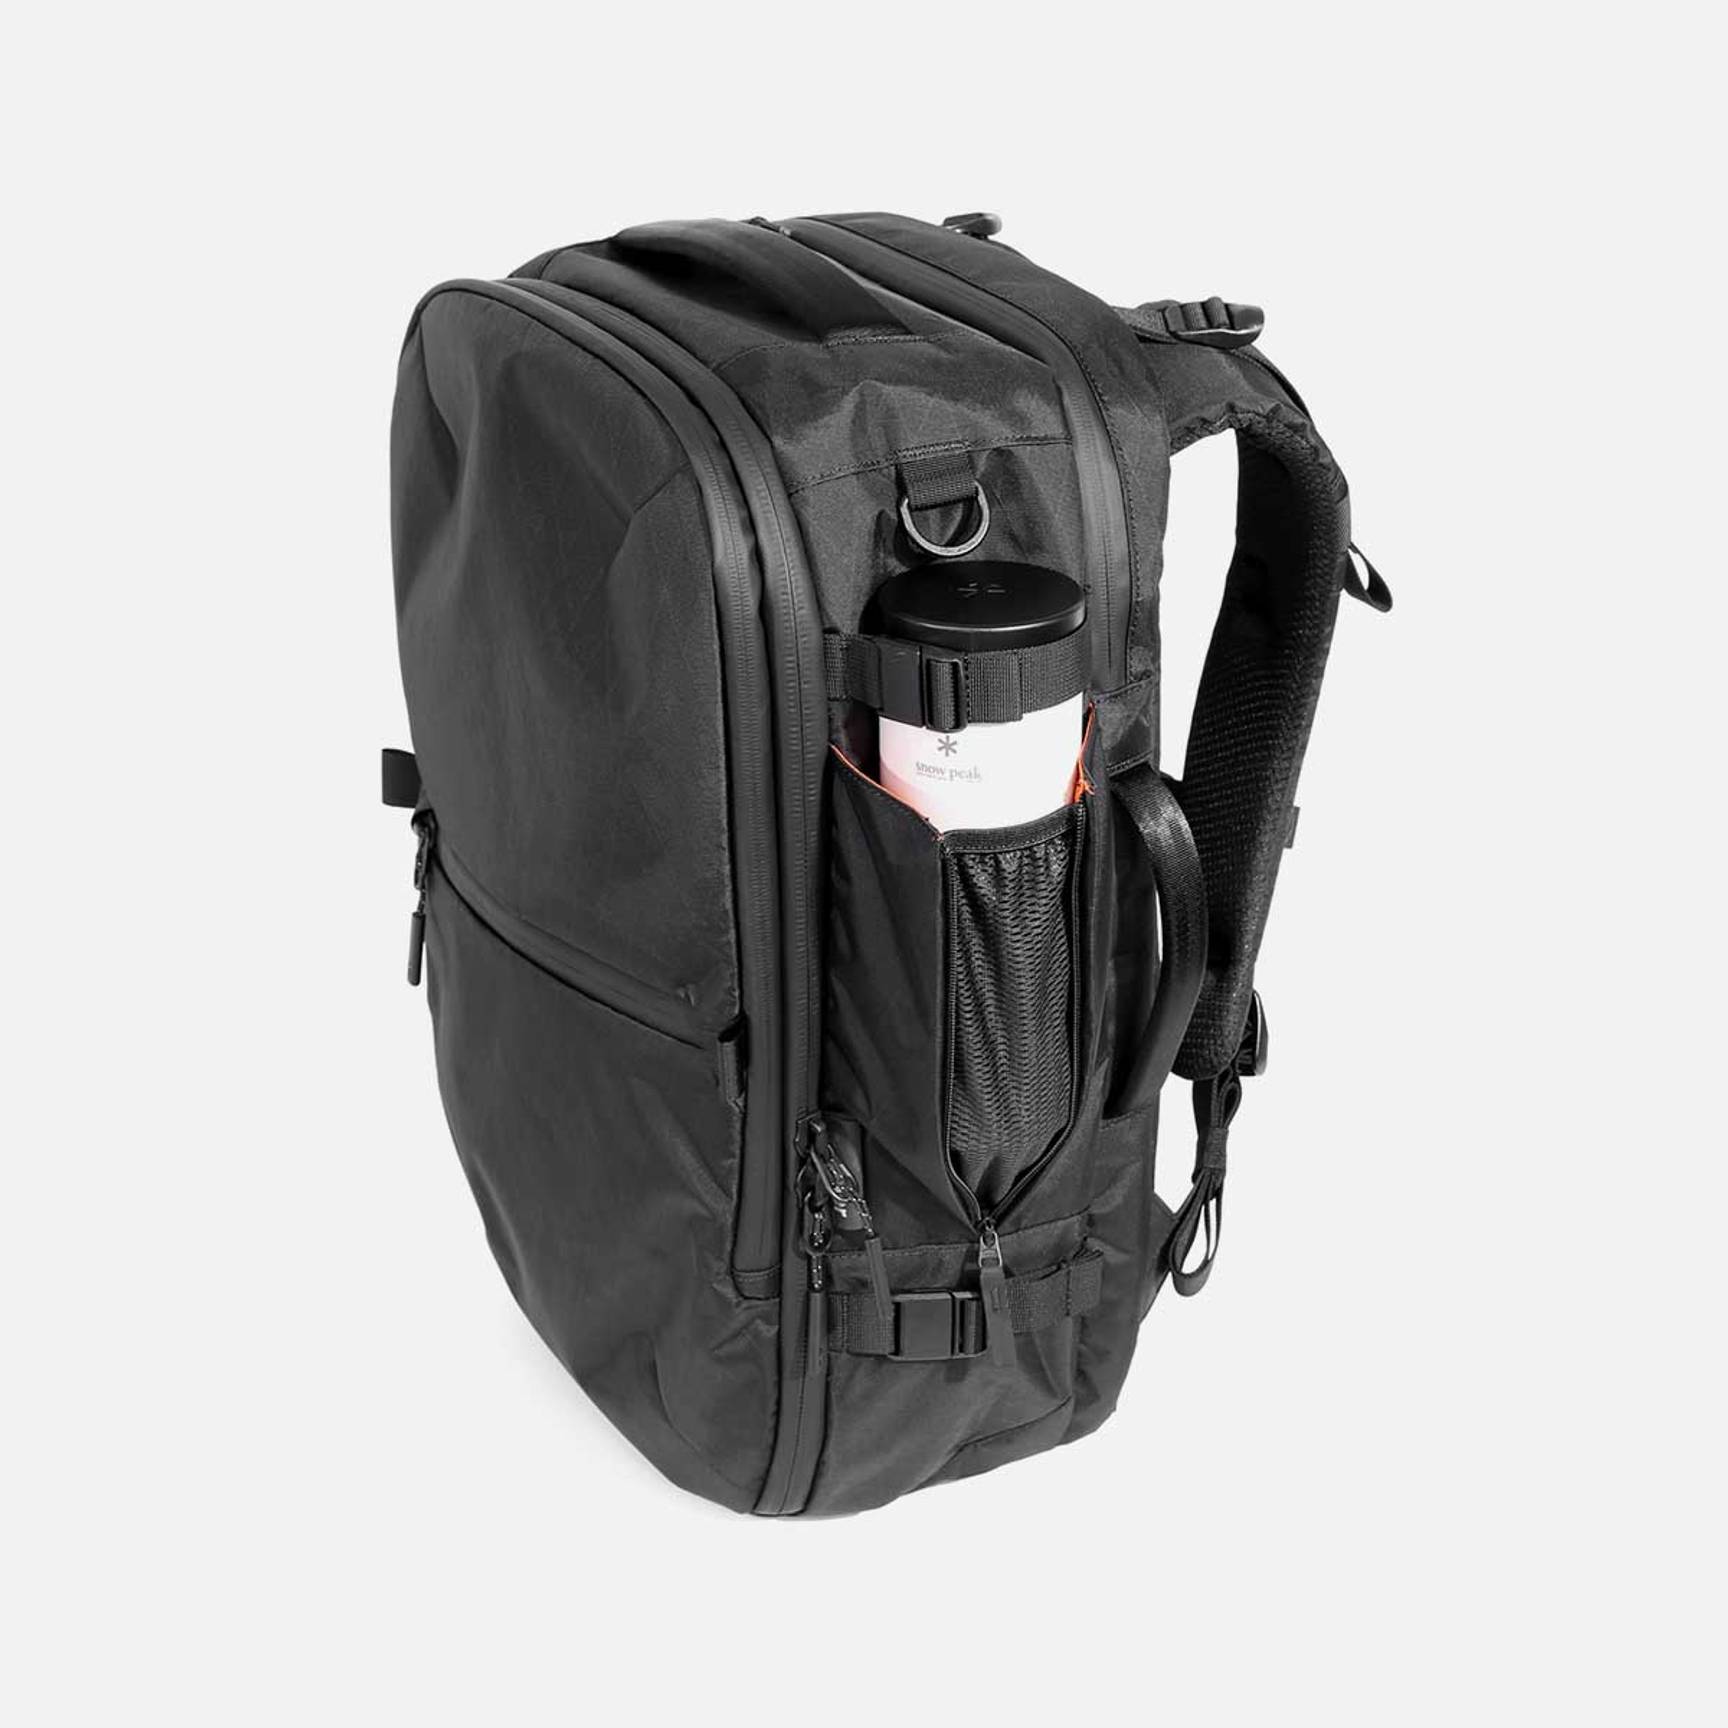 Aer Travel Pack 3 Backpack in Black